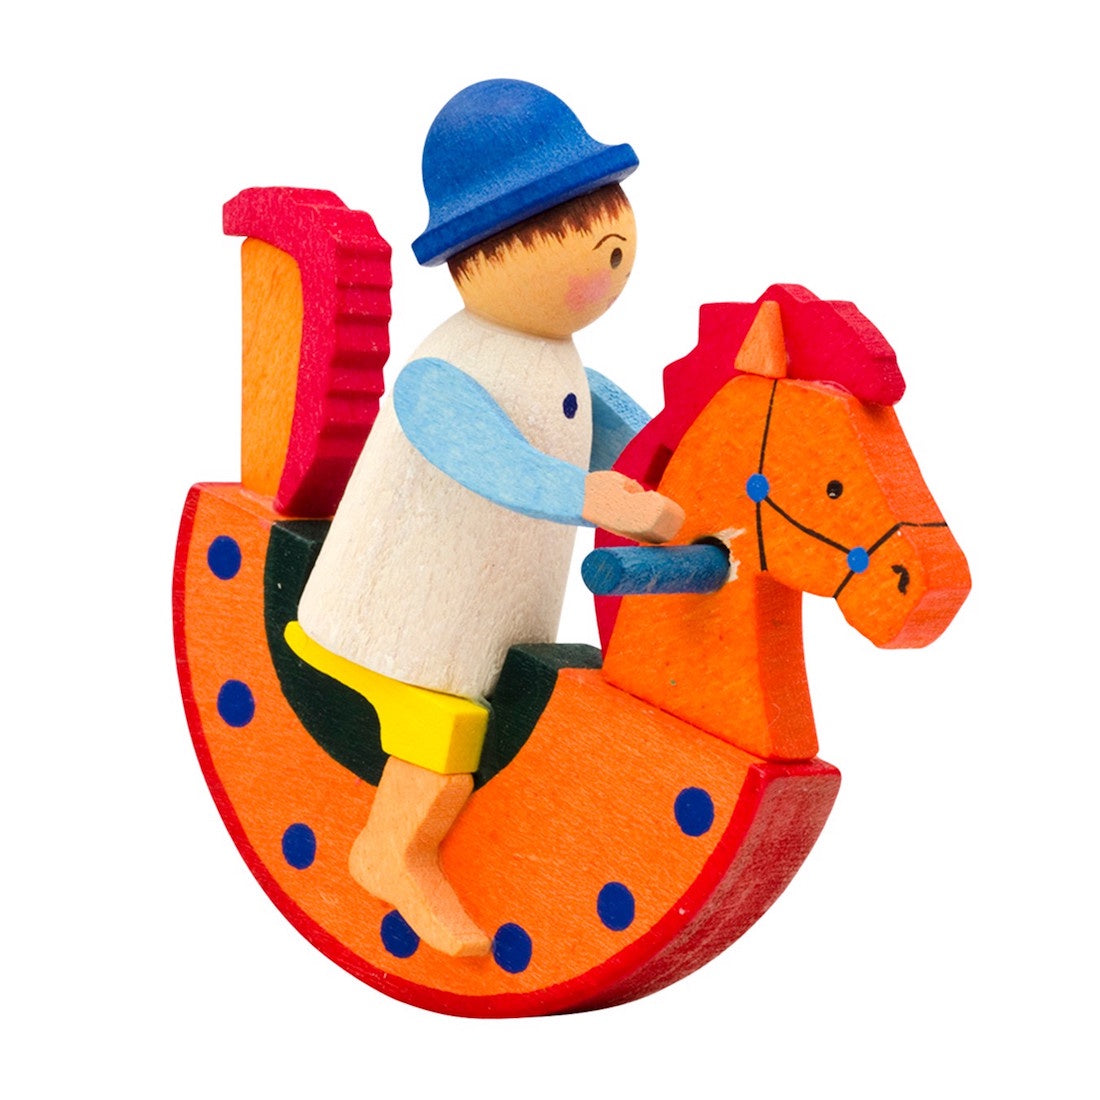 Boy on rocking horse, Orange by Graupner Holzminiaturen